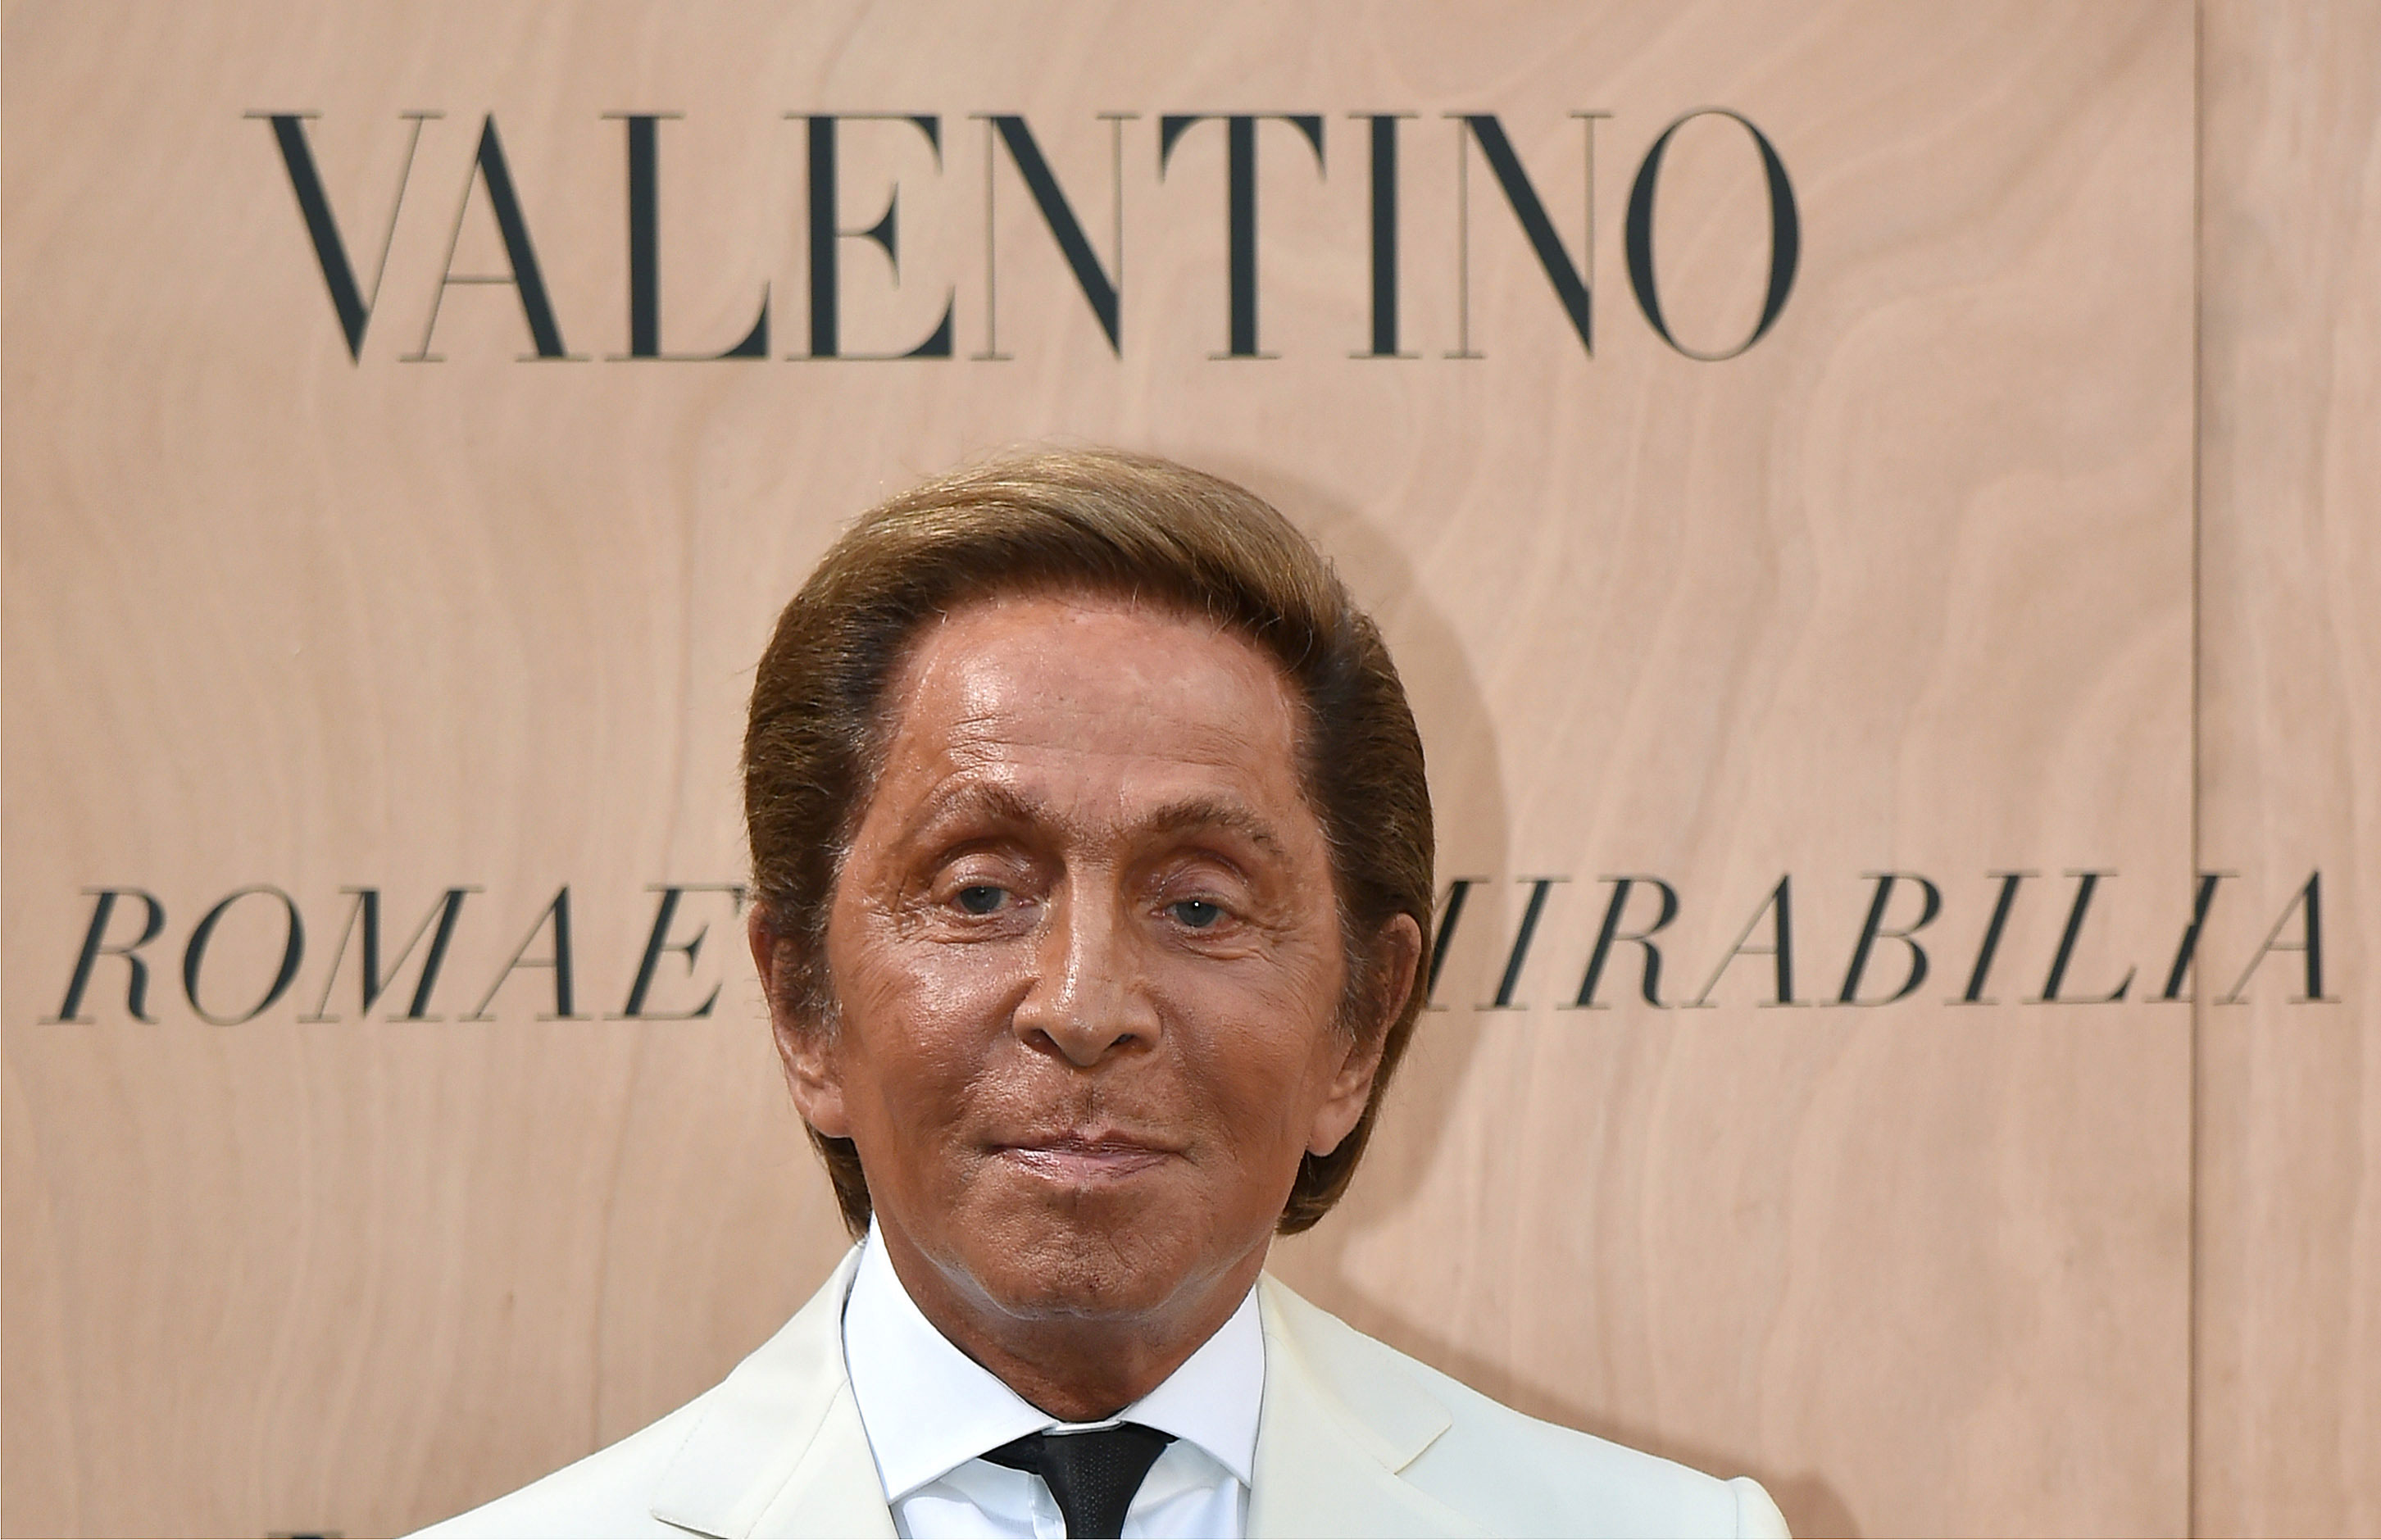 La “foto creepy” de Valentino a sus 83 años de edad